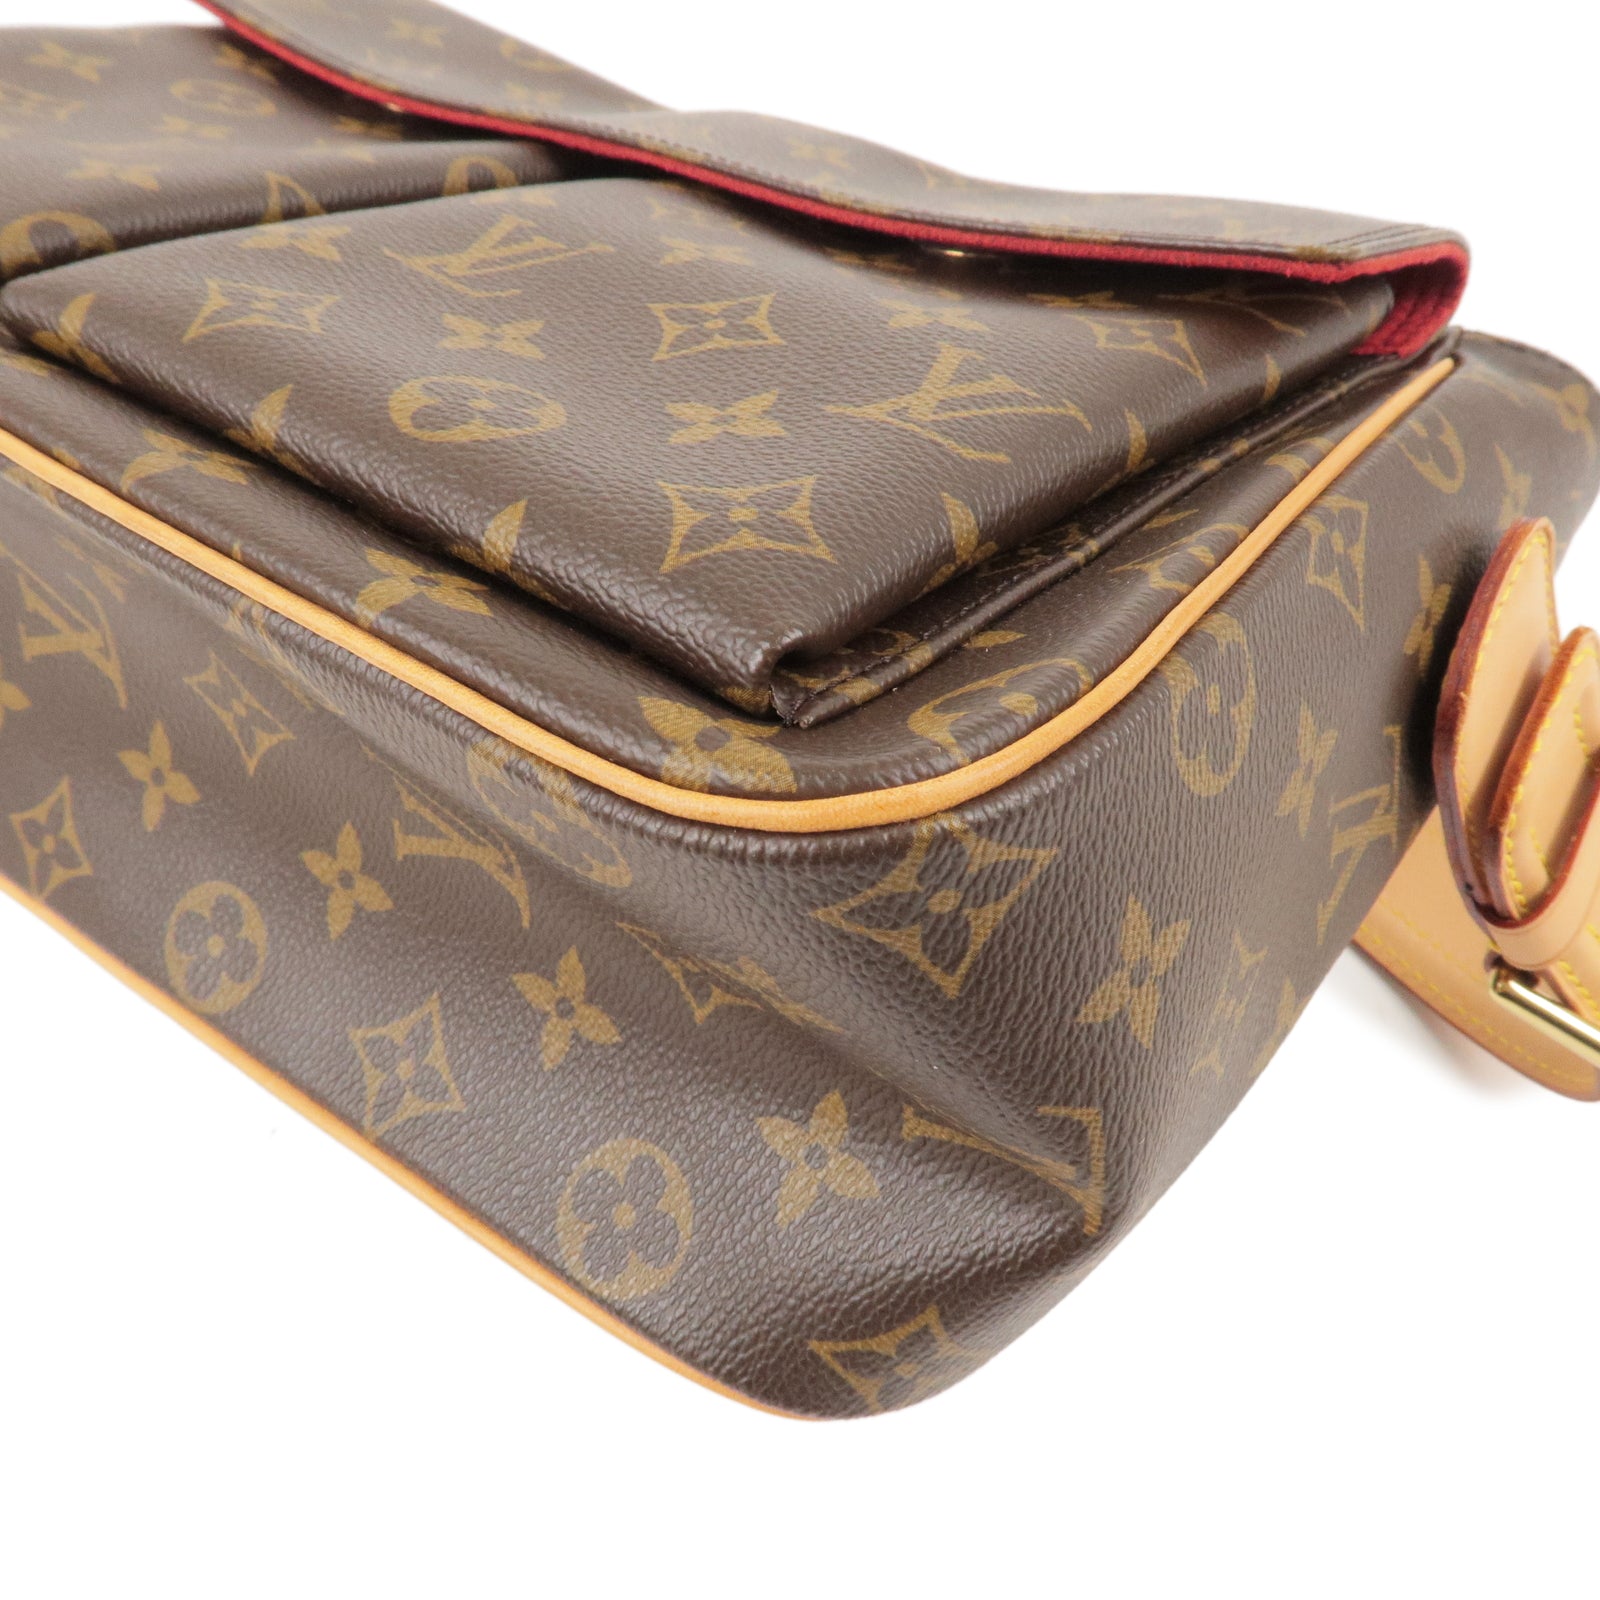 LOUIS VUITTON Louis Vuitton Monogram Vibasite GM Brown M51163 Women's  Canvas Handbag